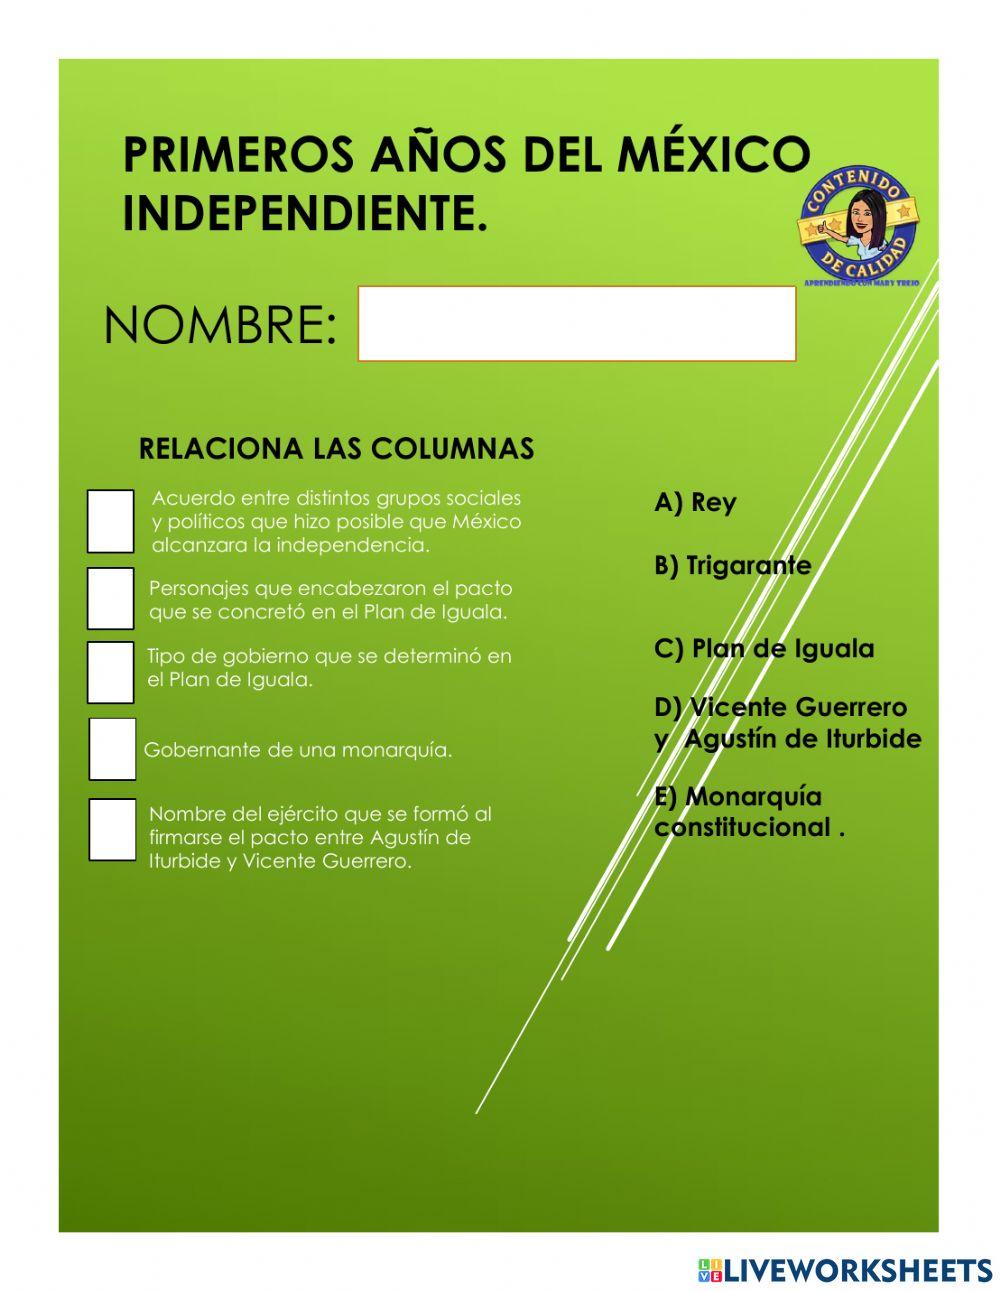 Primeros años del México independiente